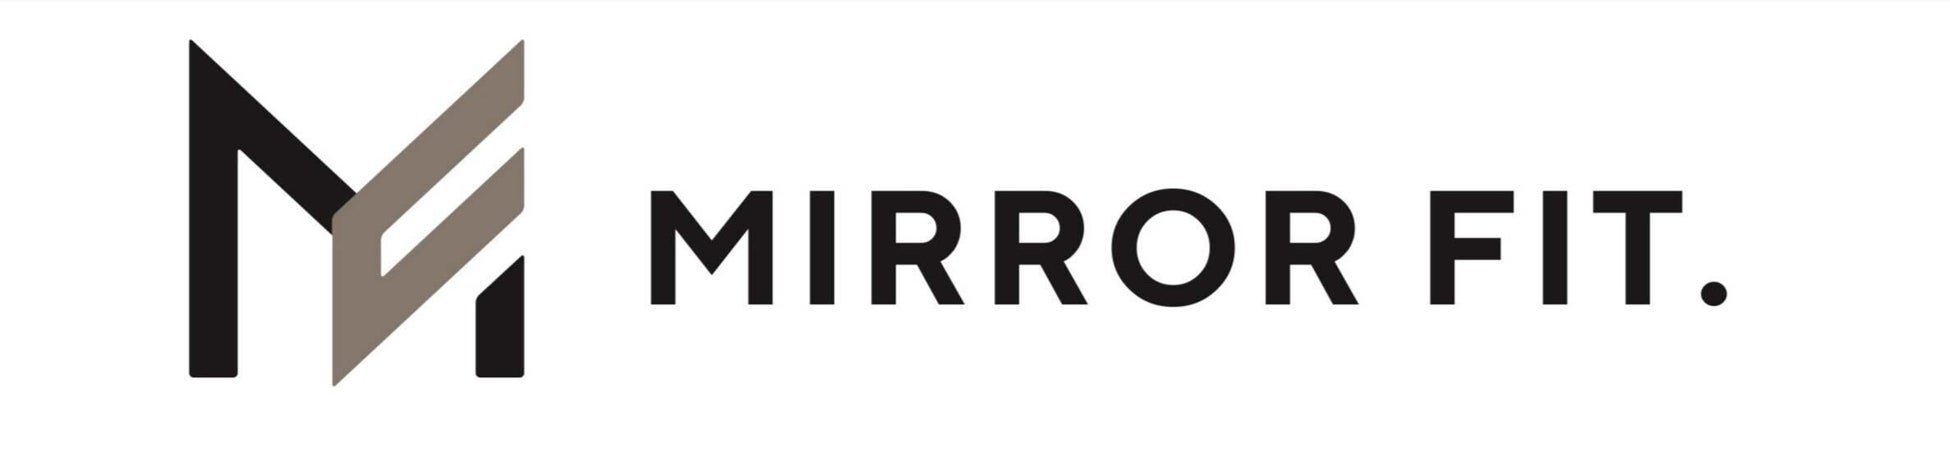 スマートホームサービス「SpaceCore」と次世代型スマートミラー「MIRROR FIT.」が連携のサブ画像5